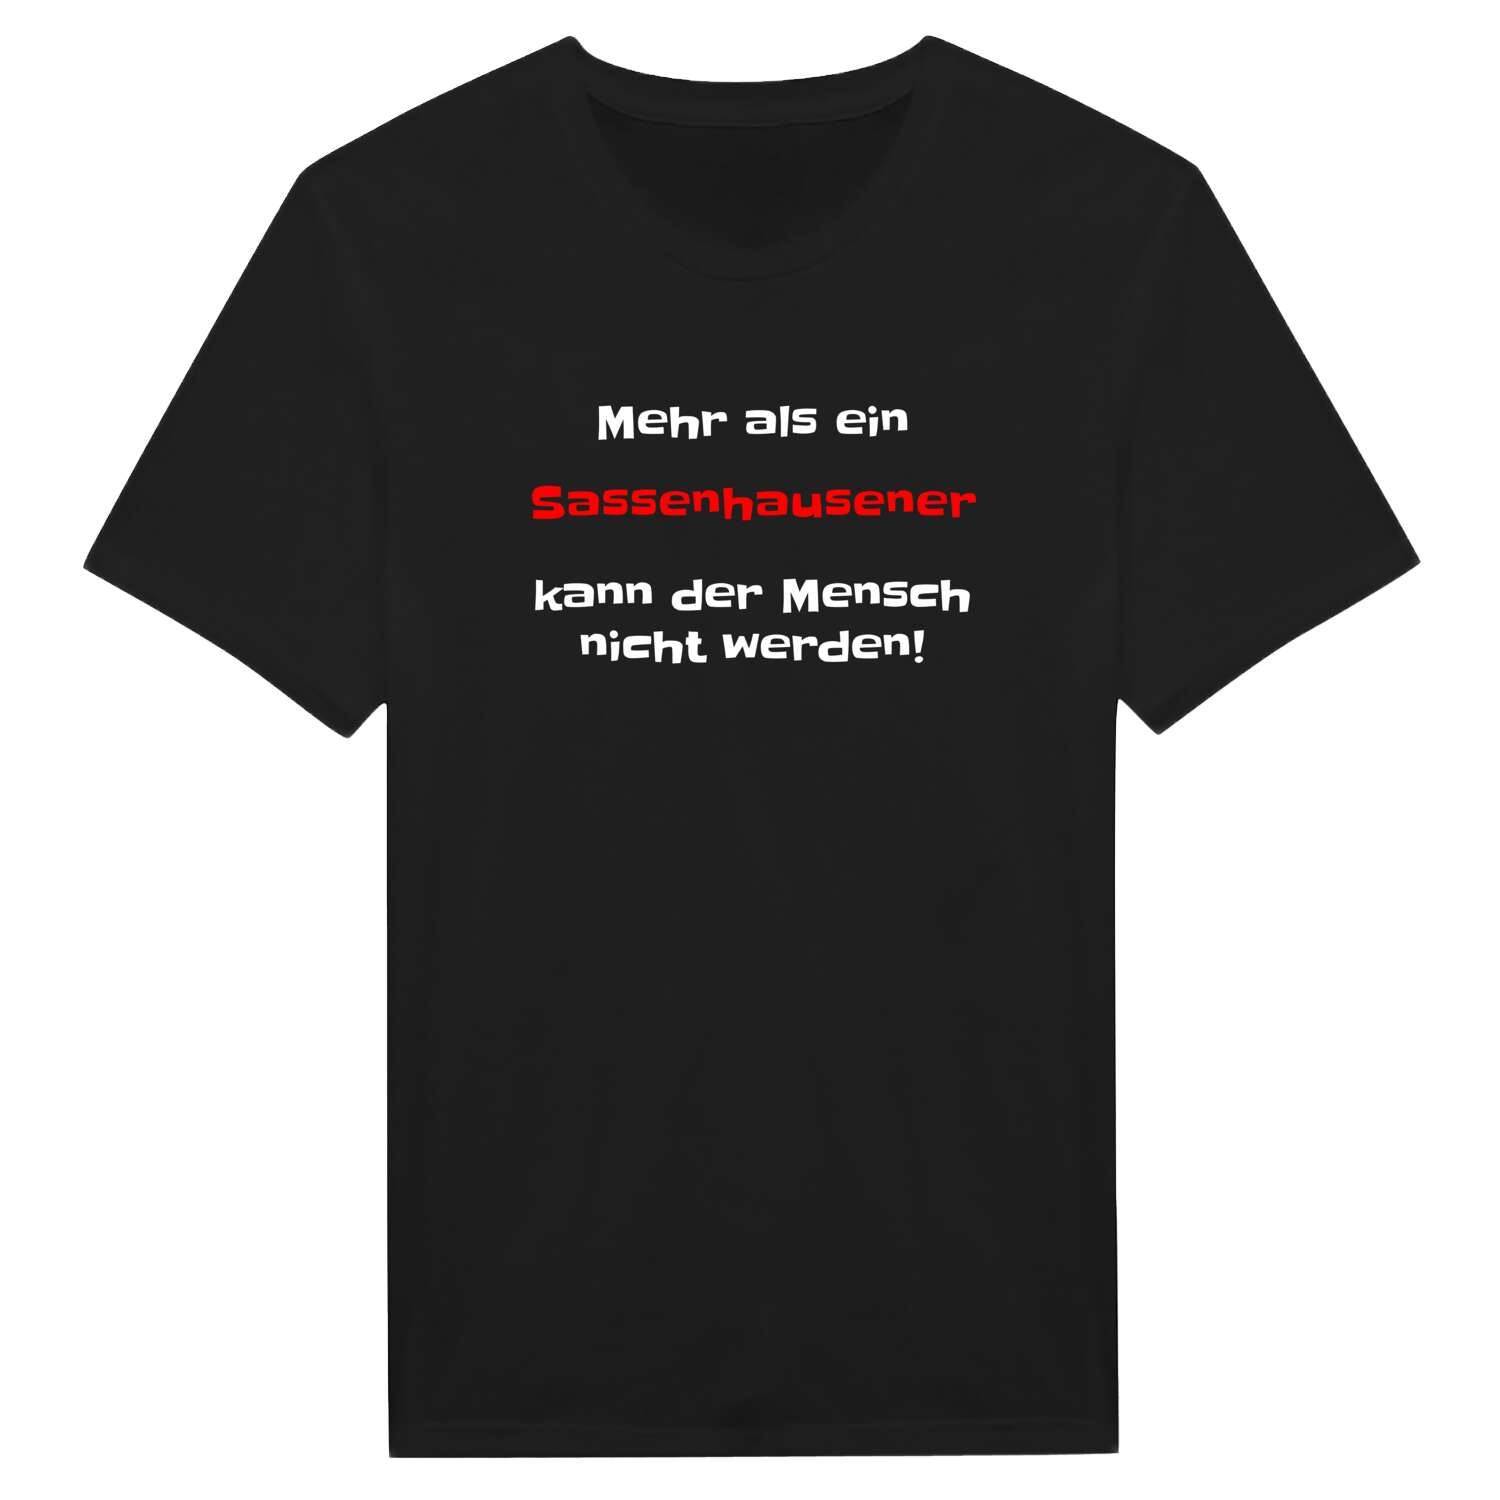 Sassenhausen T-Shirt »Mehr als ein«